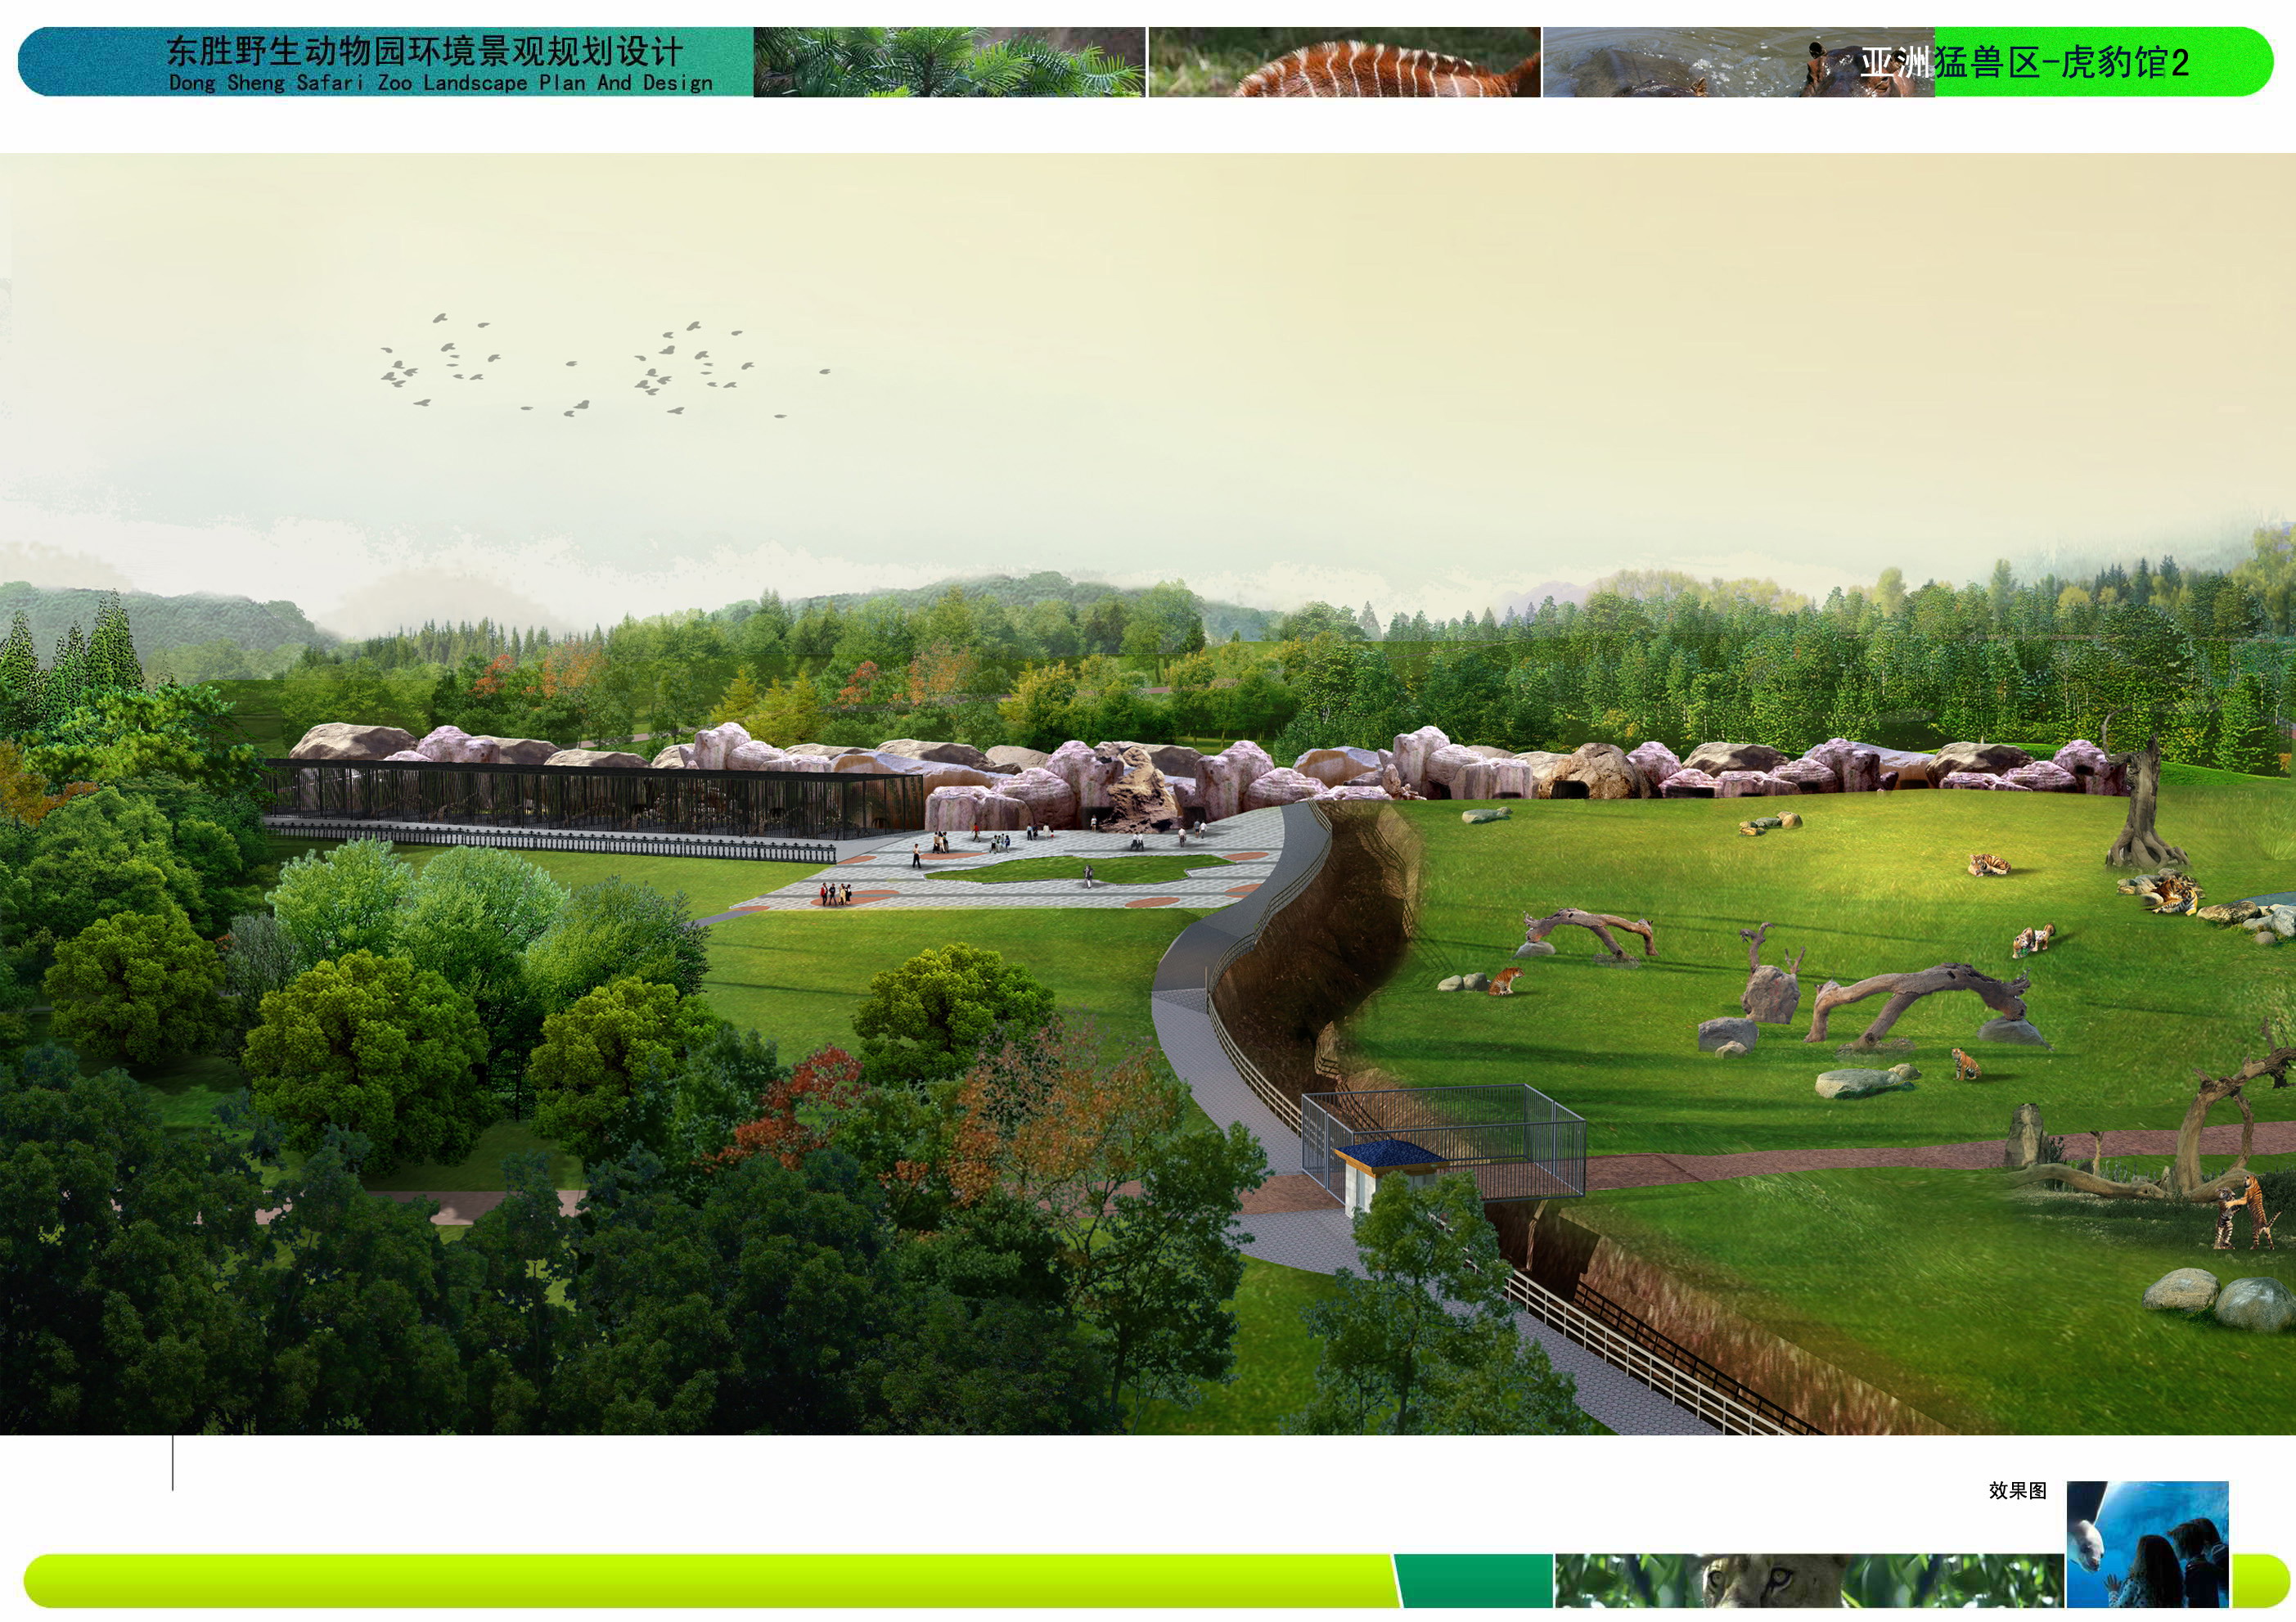 北京市数字化规划设计厂家数字化规划设计 景观规划设计  特色生态小镇规划设计  生态乡村旅游规划 迪斯尼游乐园景观规划